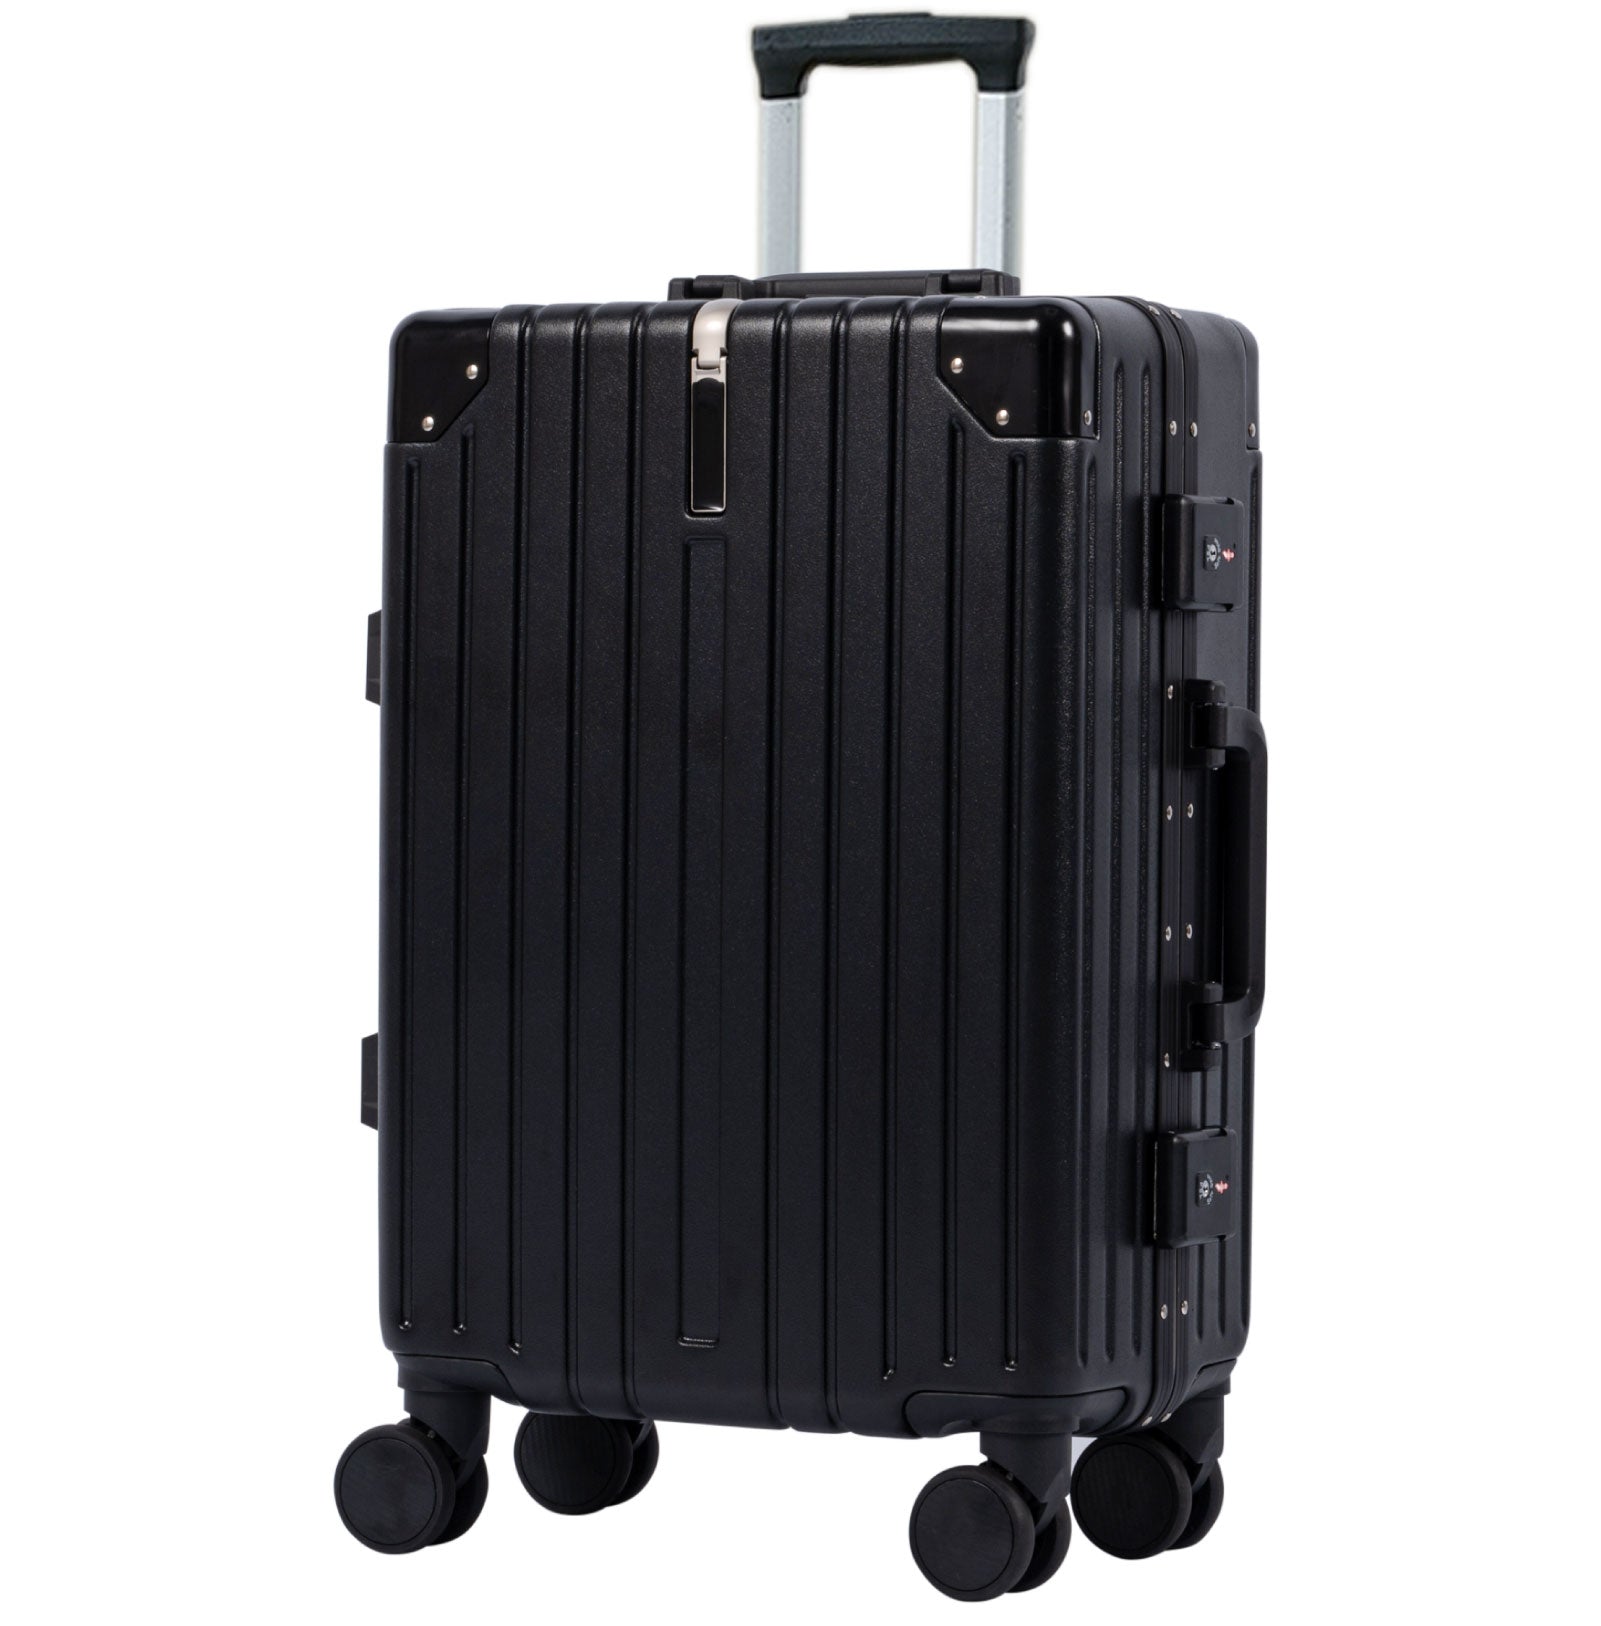 スーツケース フレームタイプ USBポート付き キャリーケース Mサイズ 65L 大型 5カラー選ぶ 4-7日用 泊まる カップホルダー付き 軽量 大容量 多収納ポケット トランク 修学旅行 海外旅行 国内旅行 sc176-24